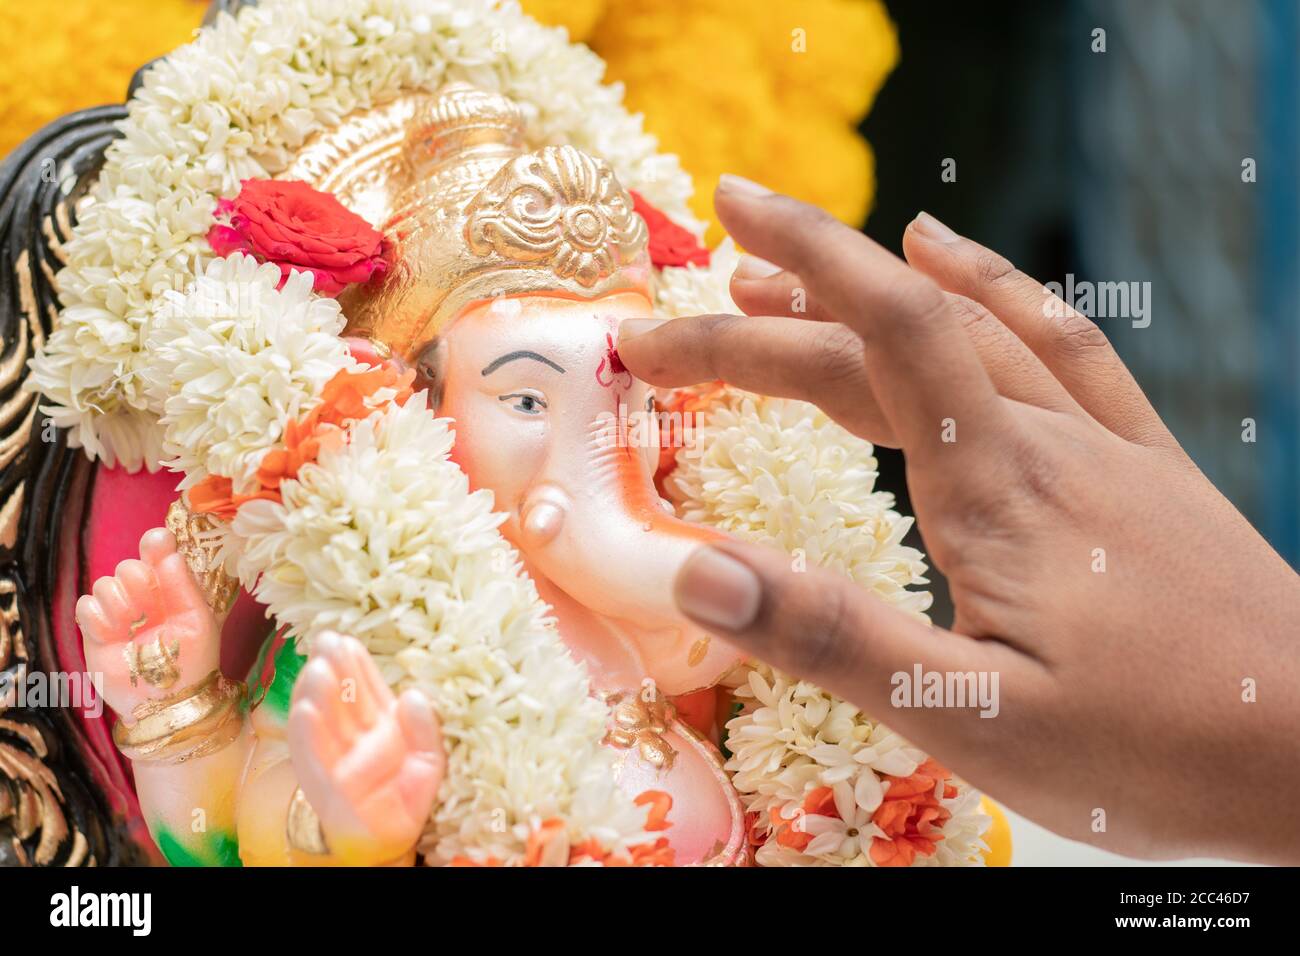 Gros plan des mains appliquant Tilak ou Kumkum au Seigneur Ganesha pendant la cérémonie religieuse indienne de ganesha ou de vinayaka Chaturthi festival. Banque D'Images